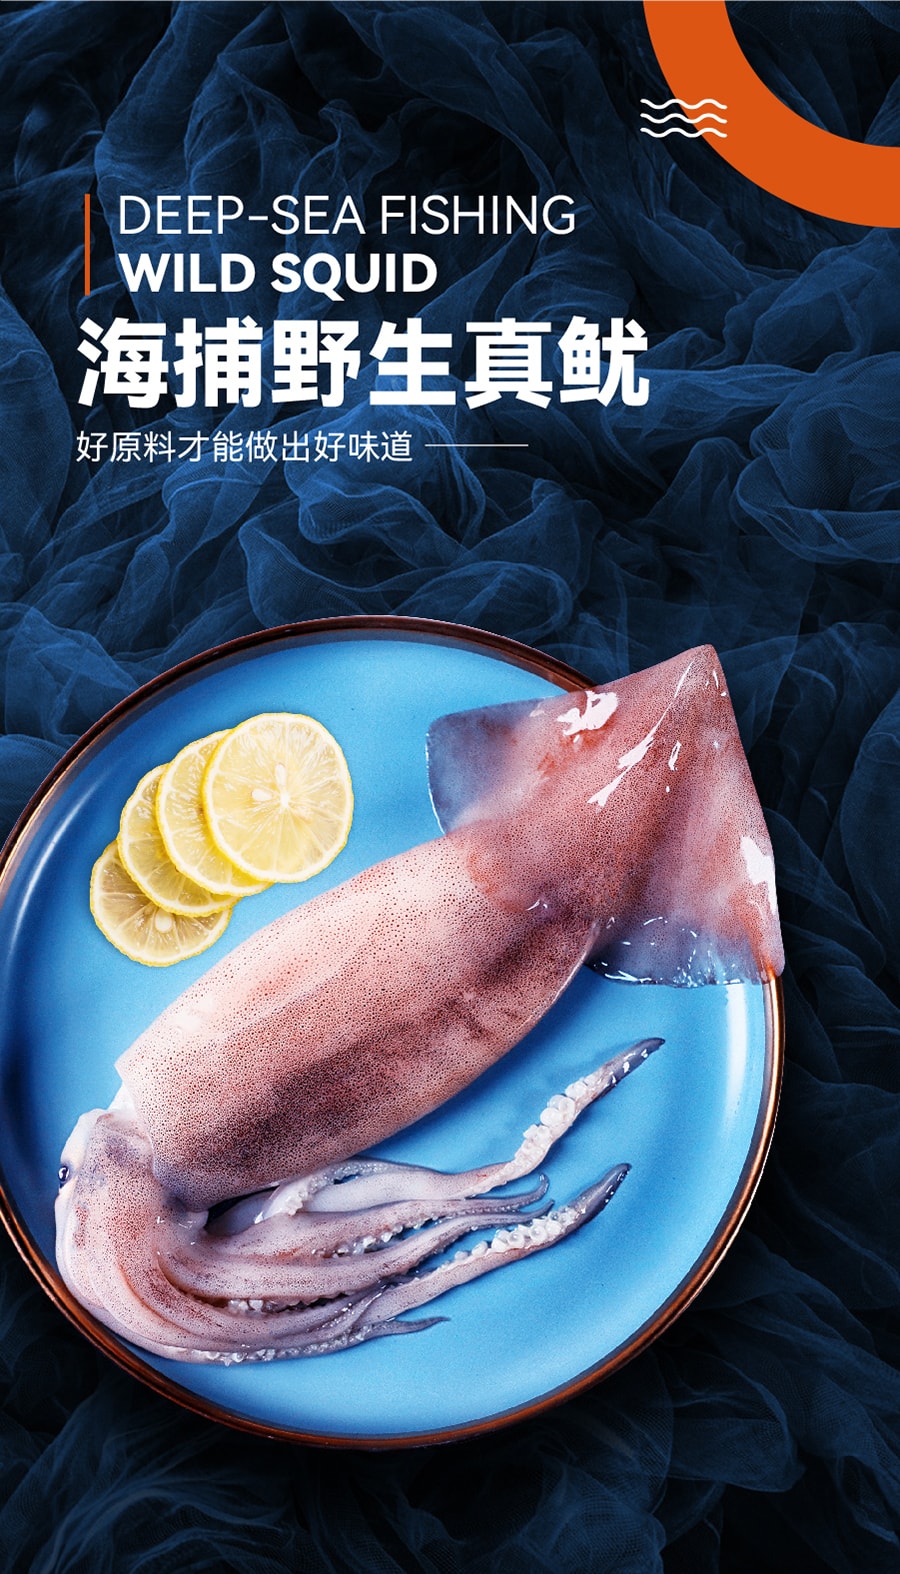 【國內爆款】水一方 現烤魷魚條大連特產烤魷魚高蛋白海味休閒零食 燒烤口味 80g